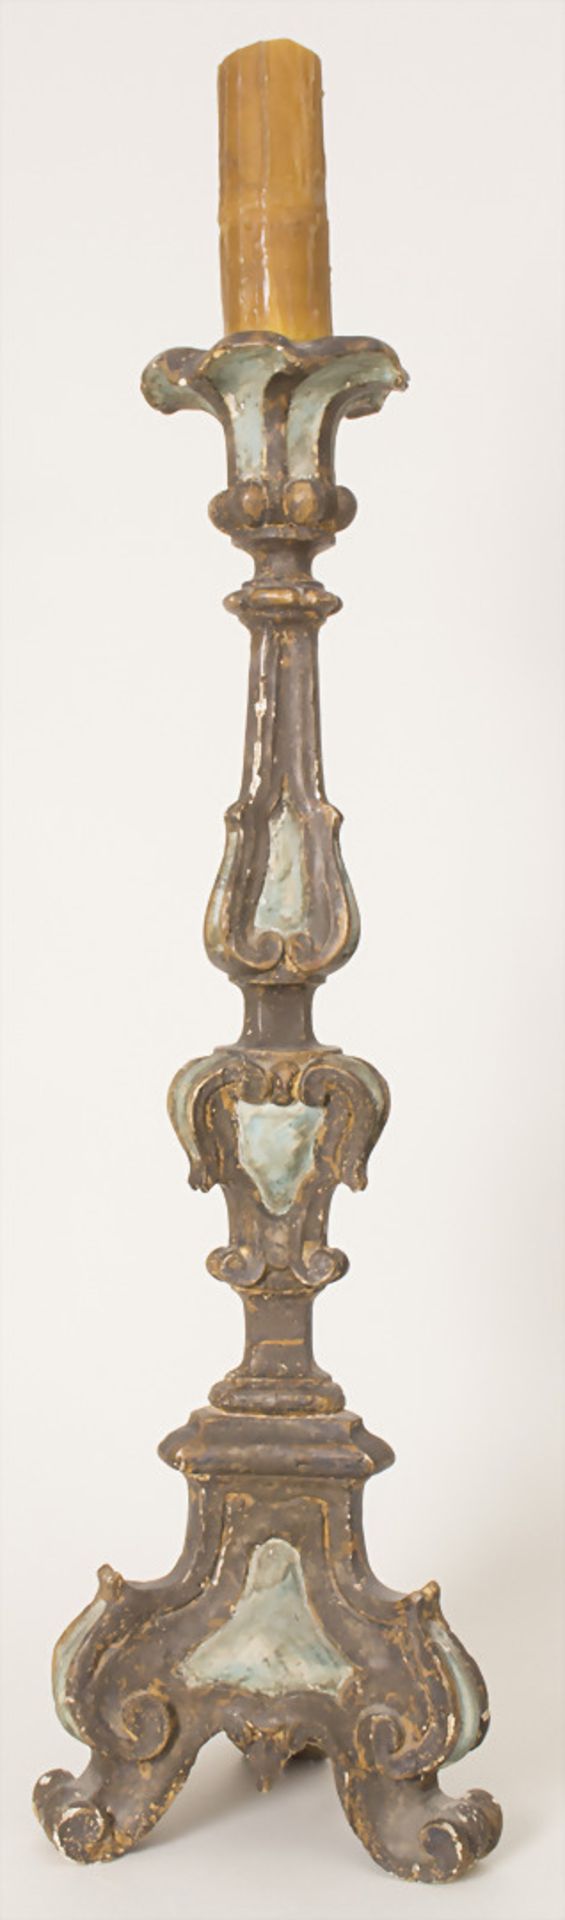 Altarleuchter / An altar candlestick, süddeutsch 18. Jh.Material: Holz, geschnitzt, farbig - Bild 2 aus 7